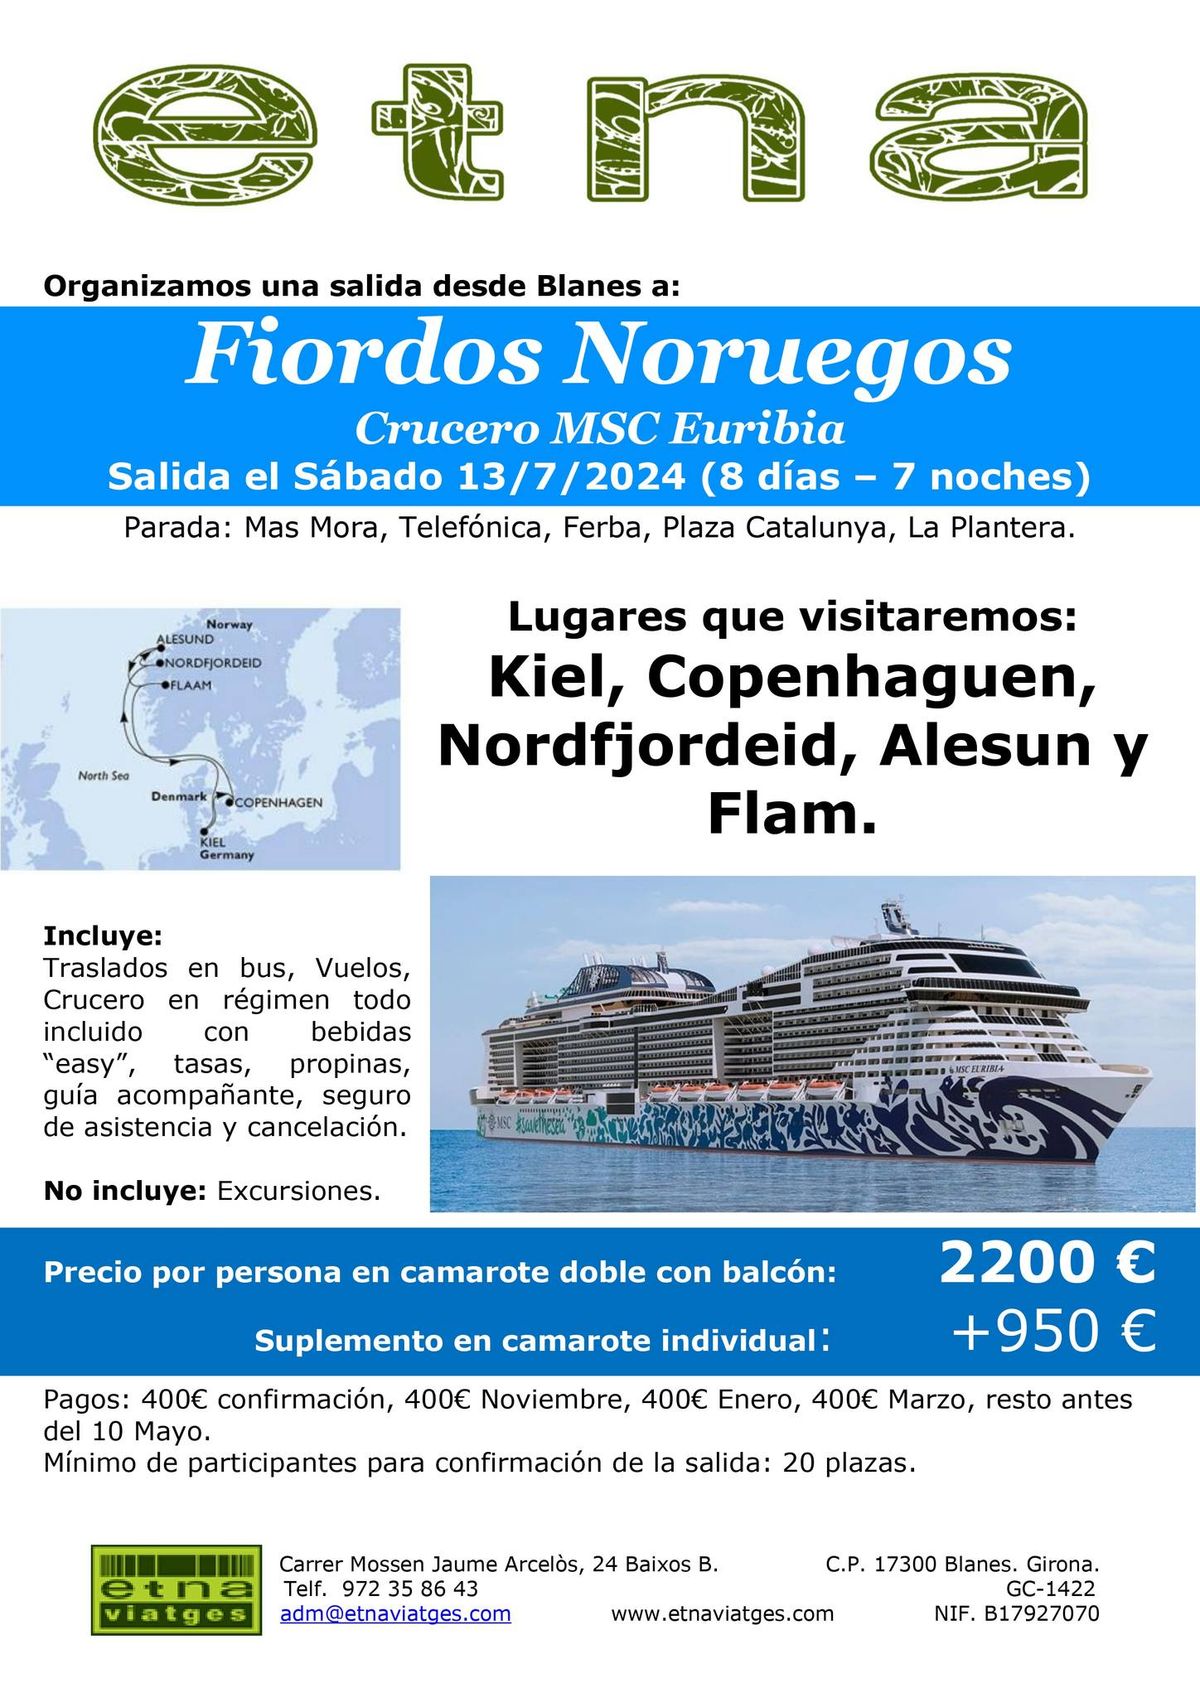 Crucero en grupo a los Fiordos Noruegos